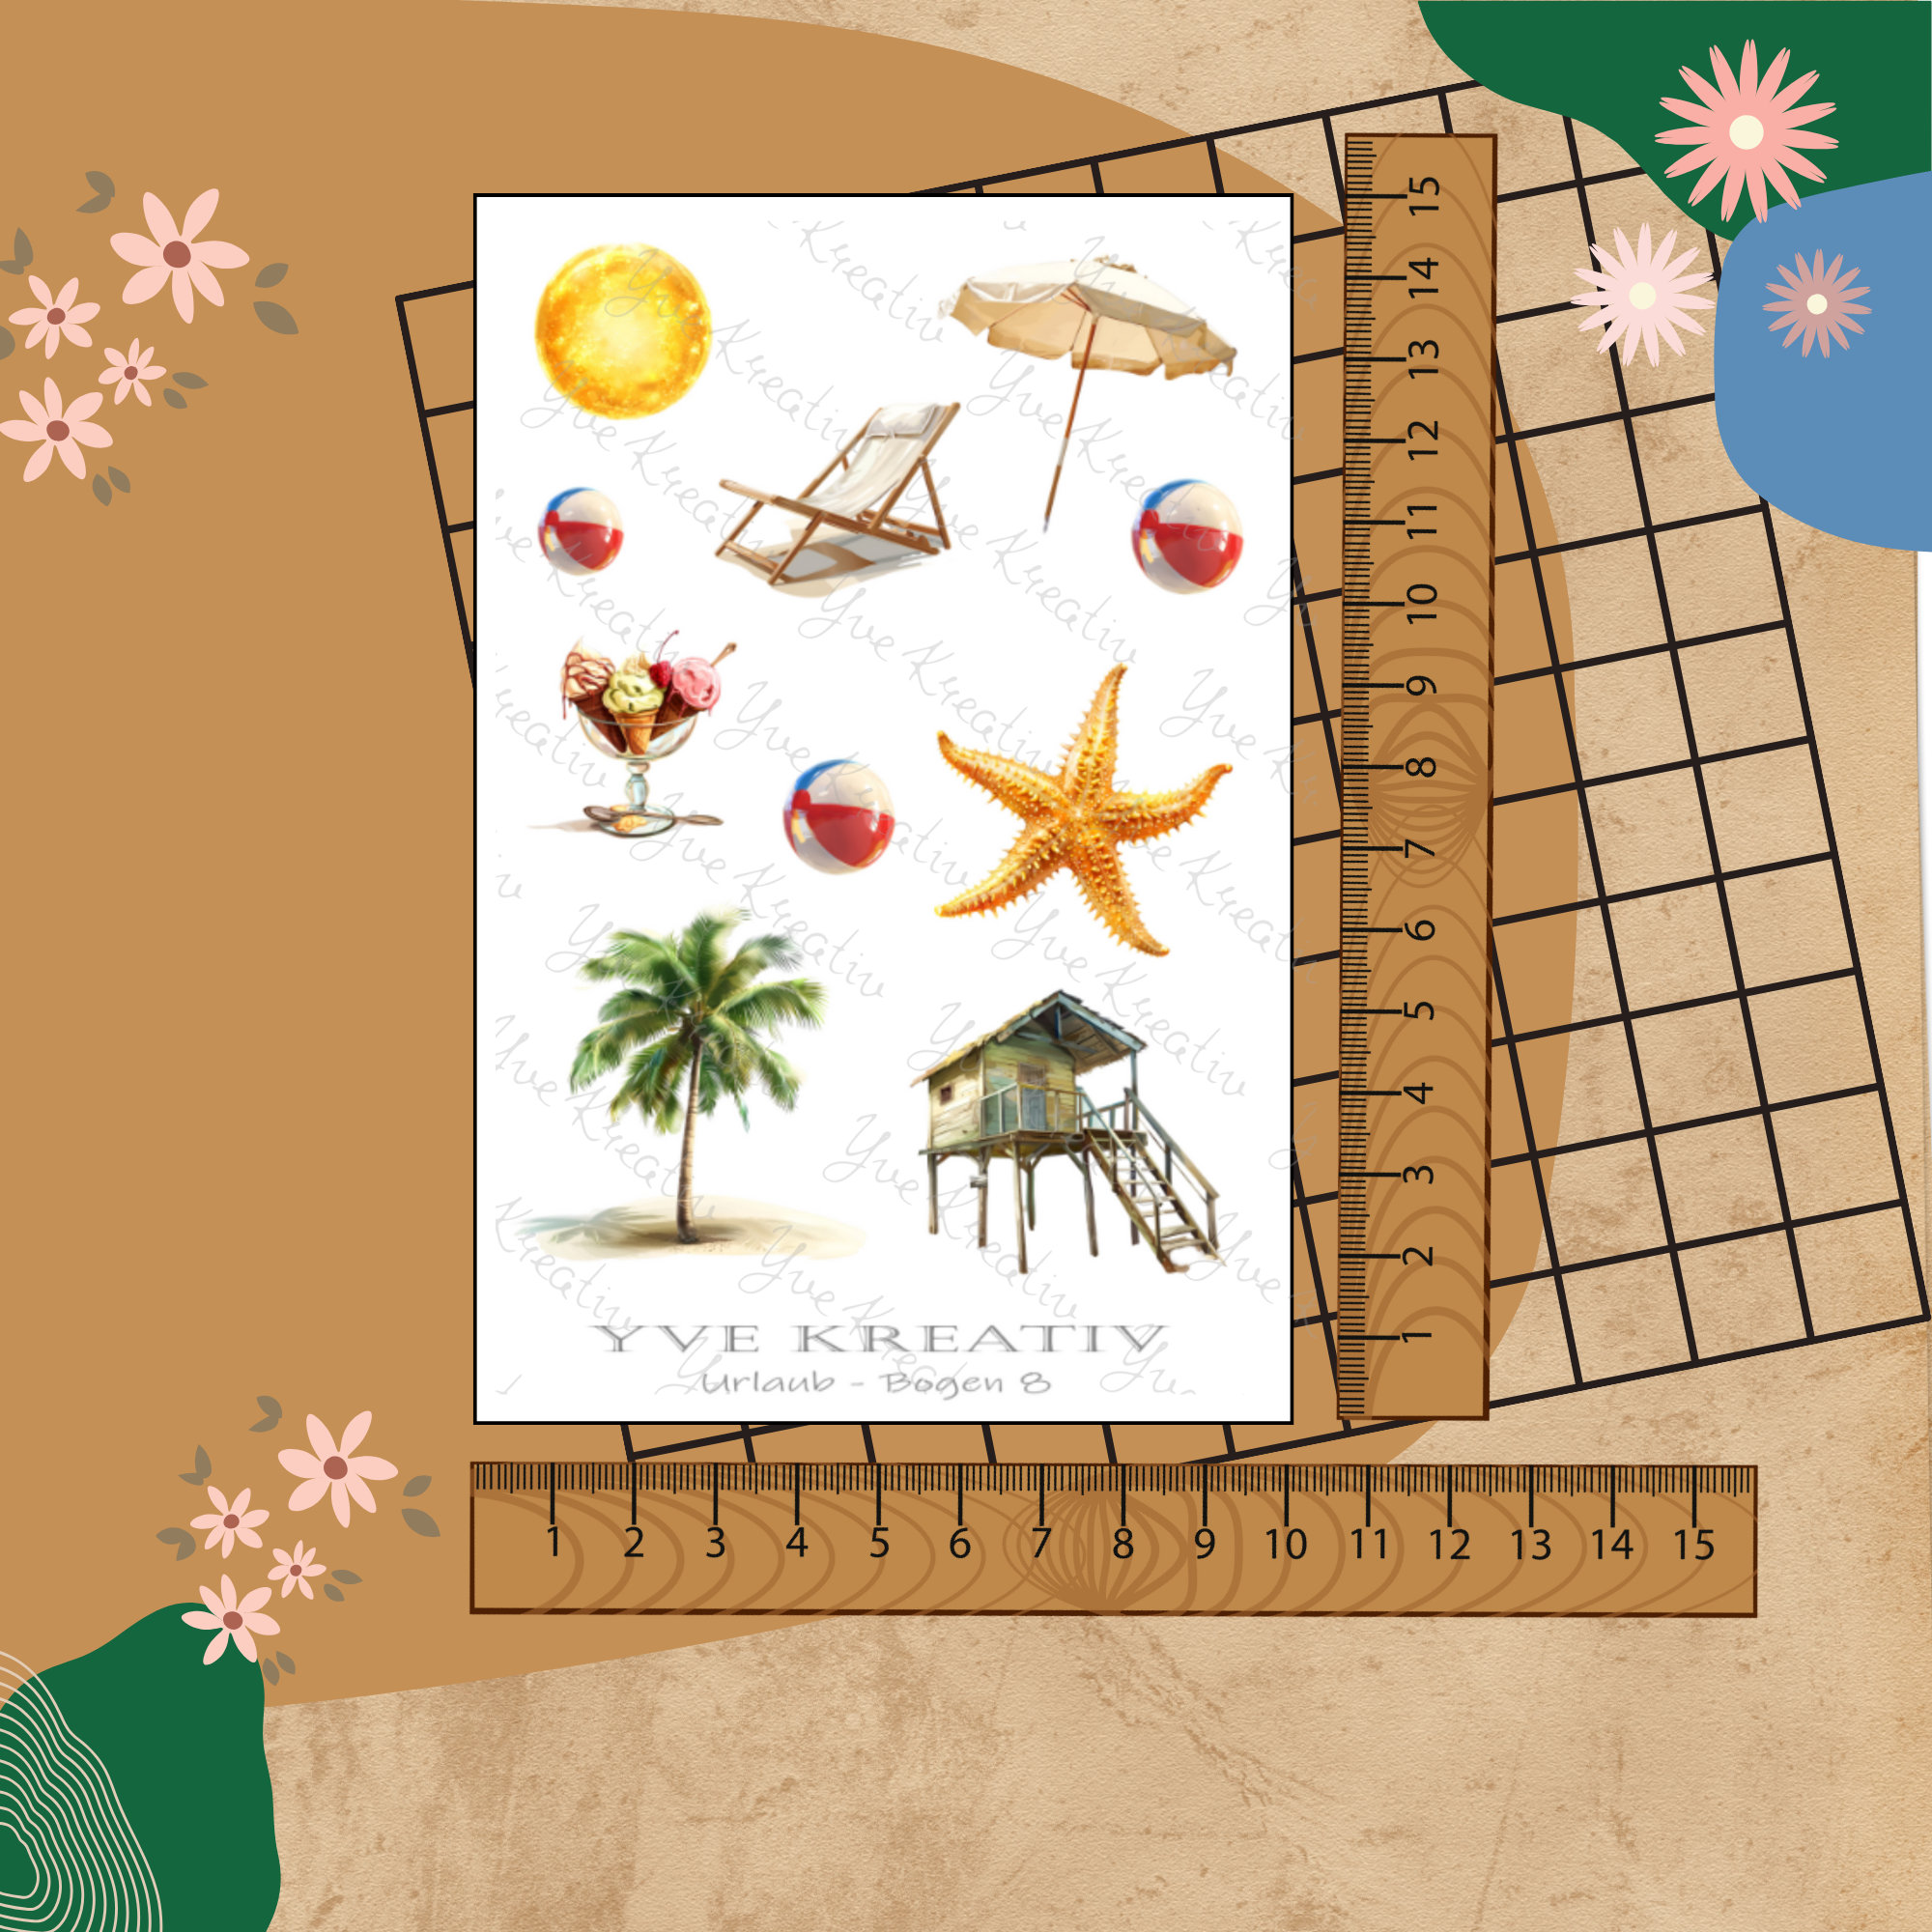 Sticker Bogen " Urlaub Insel Strand Palmen Sand " | Sticker Set - Aufkleber 3 Stickerbogen zur Auswahl in Weiß - Transparent - Matt - Glanz